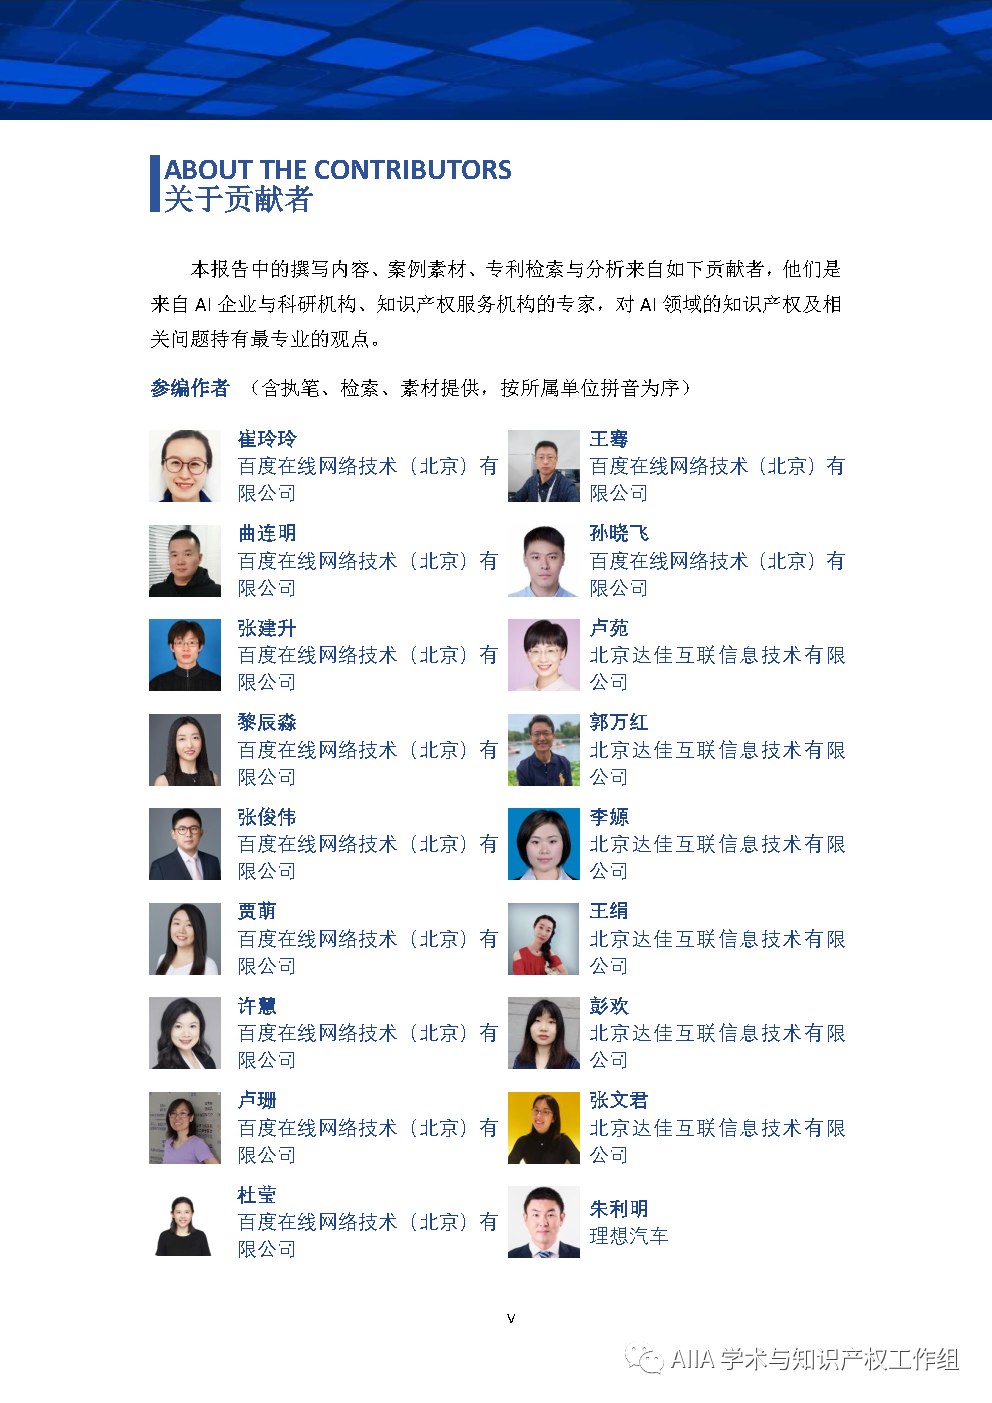 《中国人工智能产业知识产权白皮书2020》已于2021年2月3日正式发布